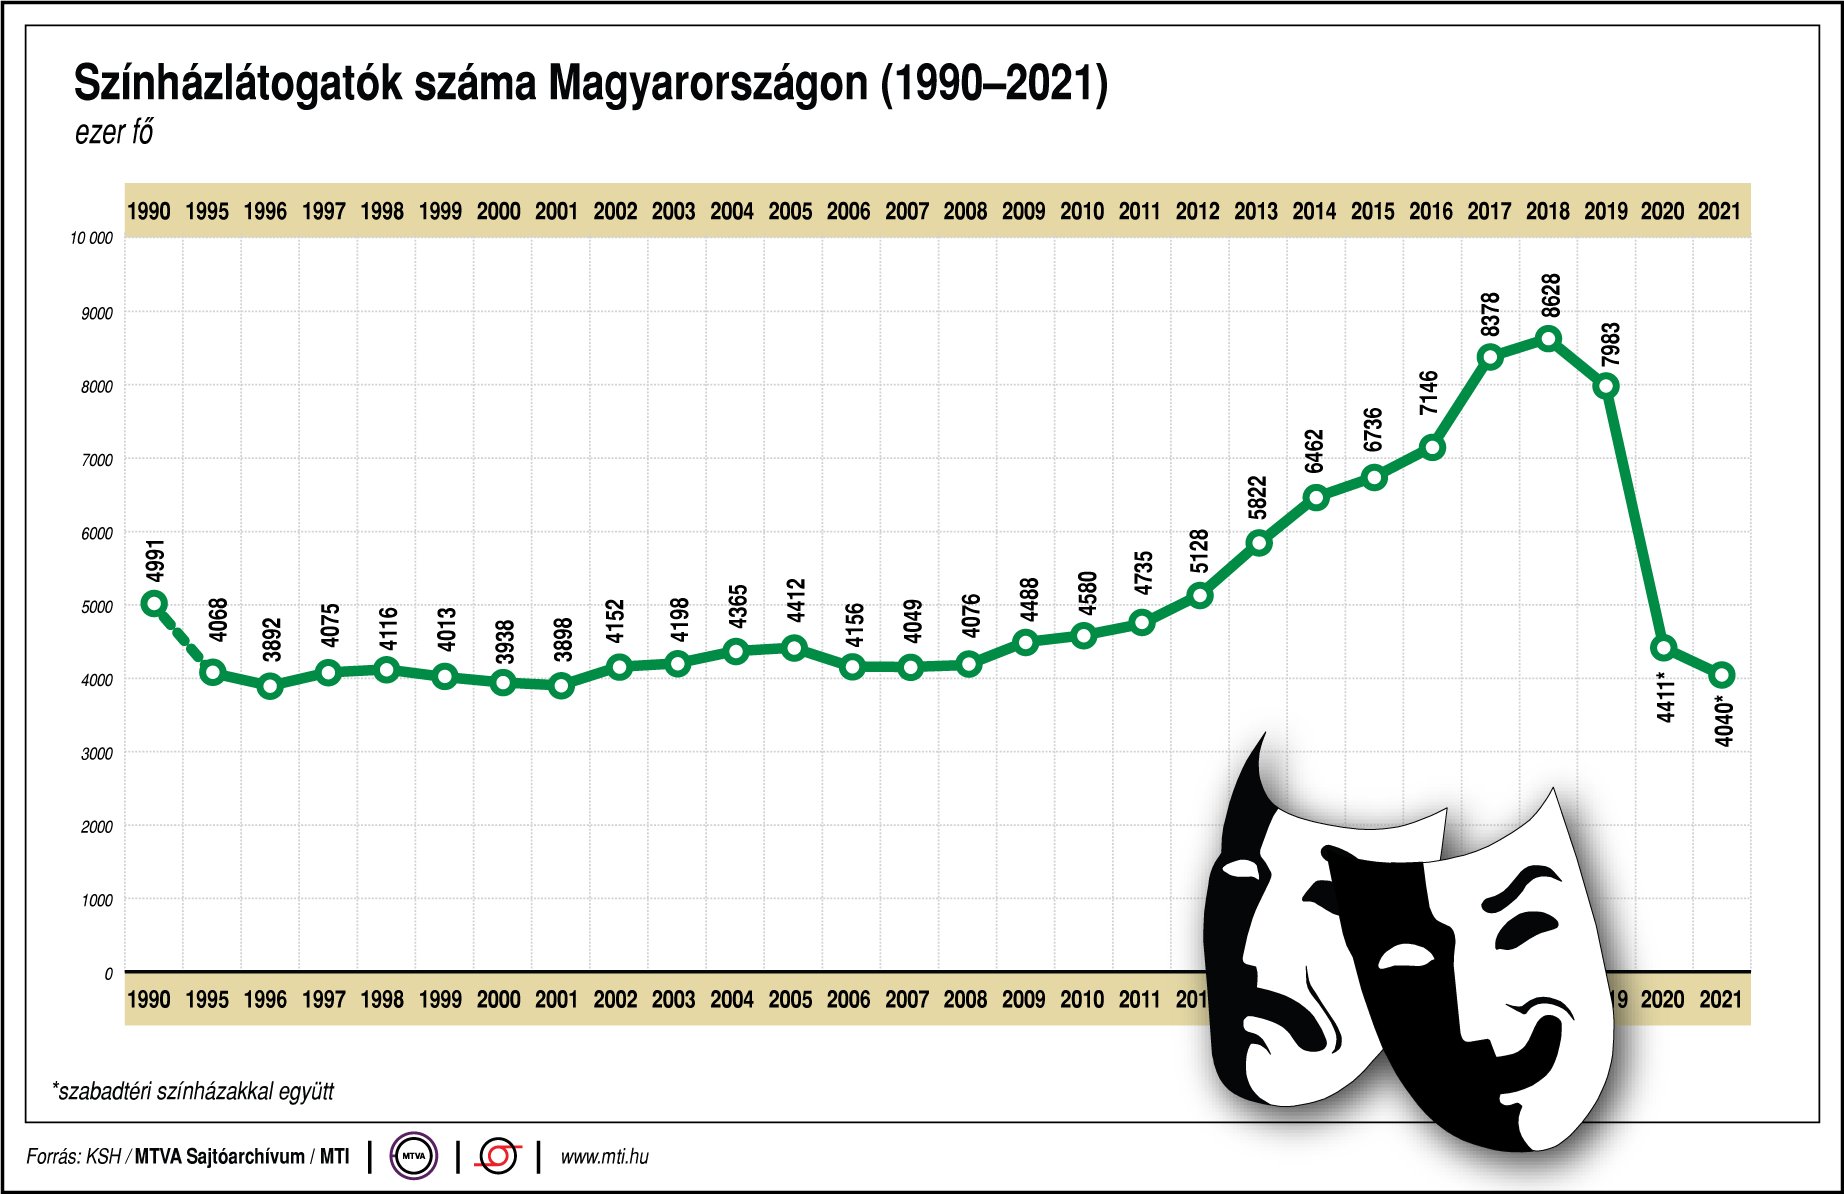 Színházlátogatók száma Magyarországon (1990-2021)